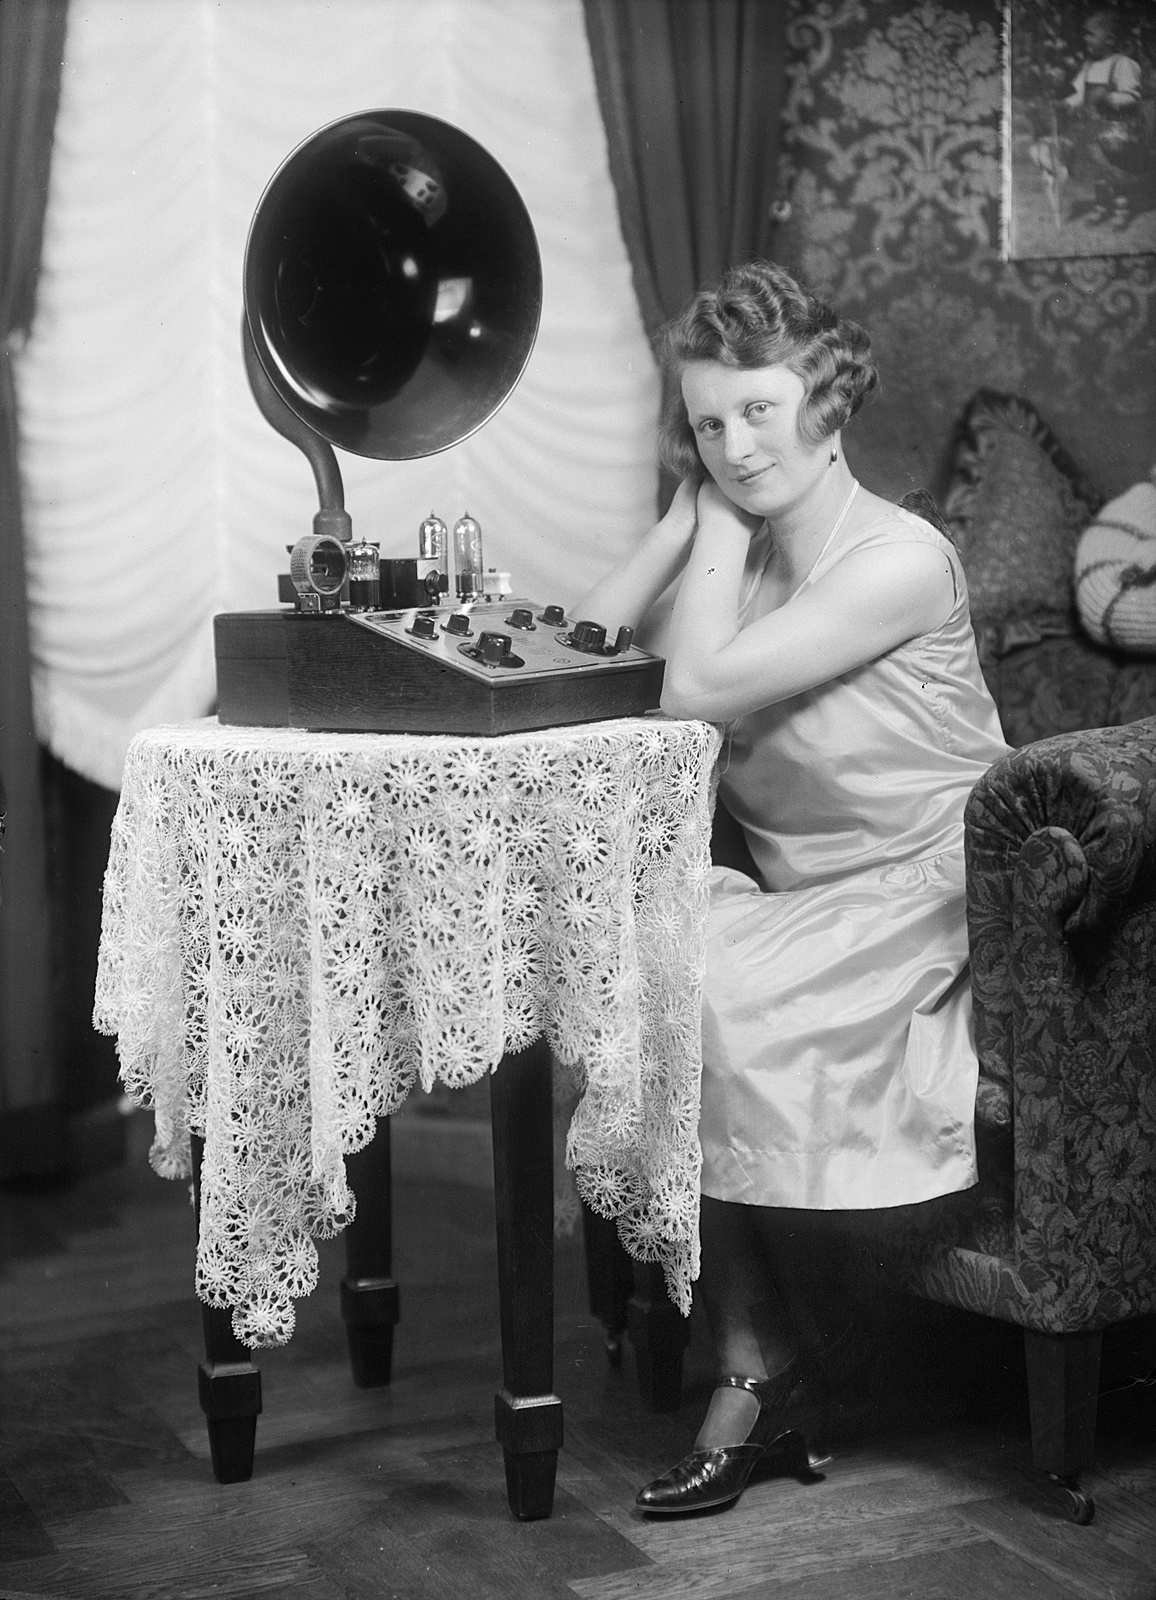 Rosswein, Saxony, in 1928: Hulda Hanisch in her living room. From the SLUB Dresden Deutschen Fotothek. CC-BY-SA-4.0